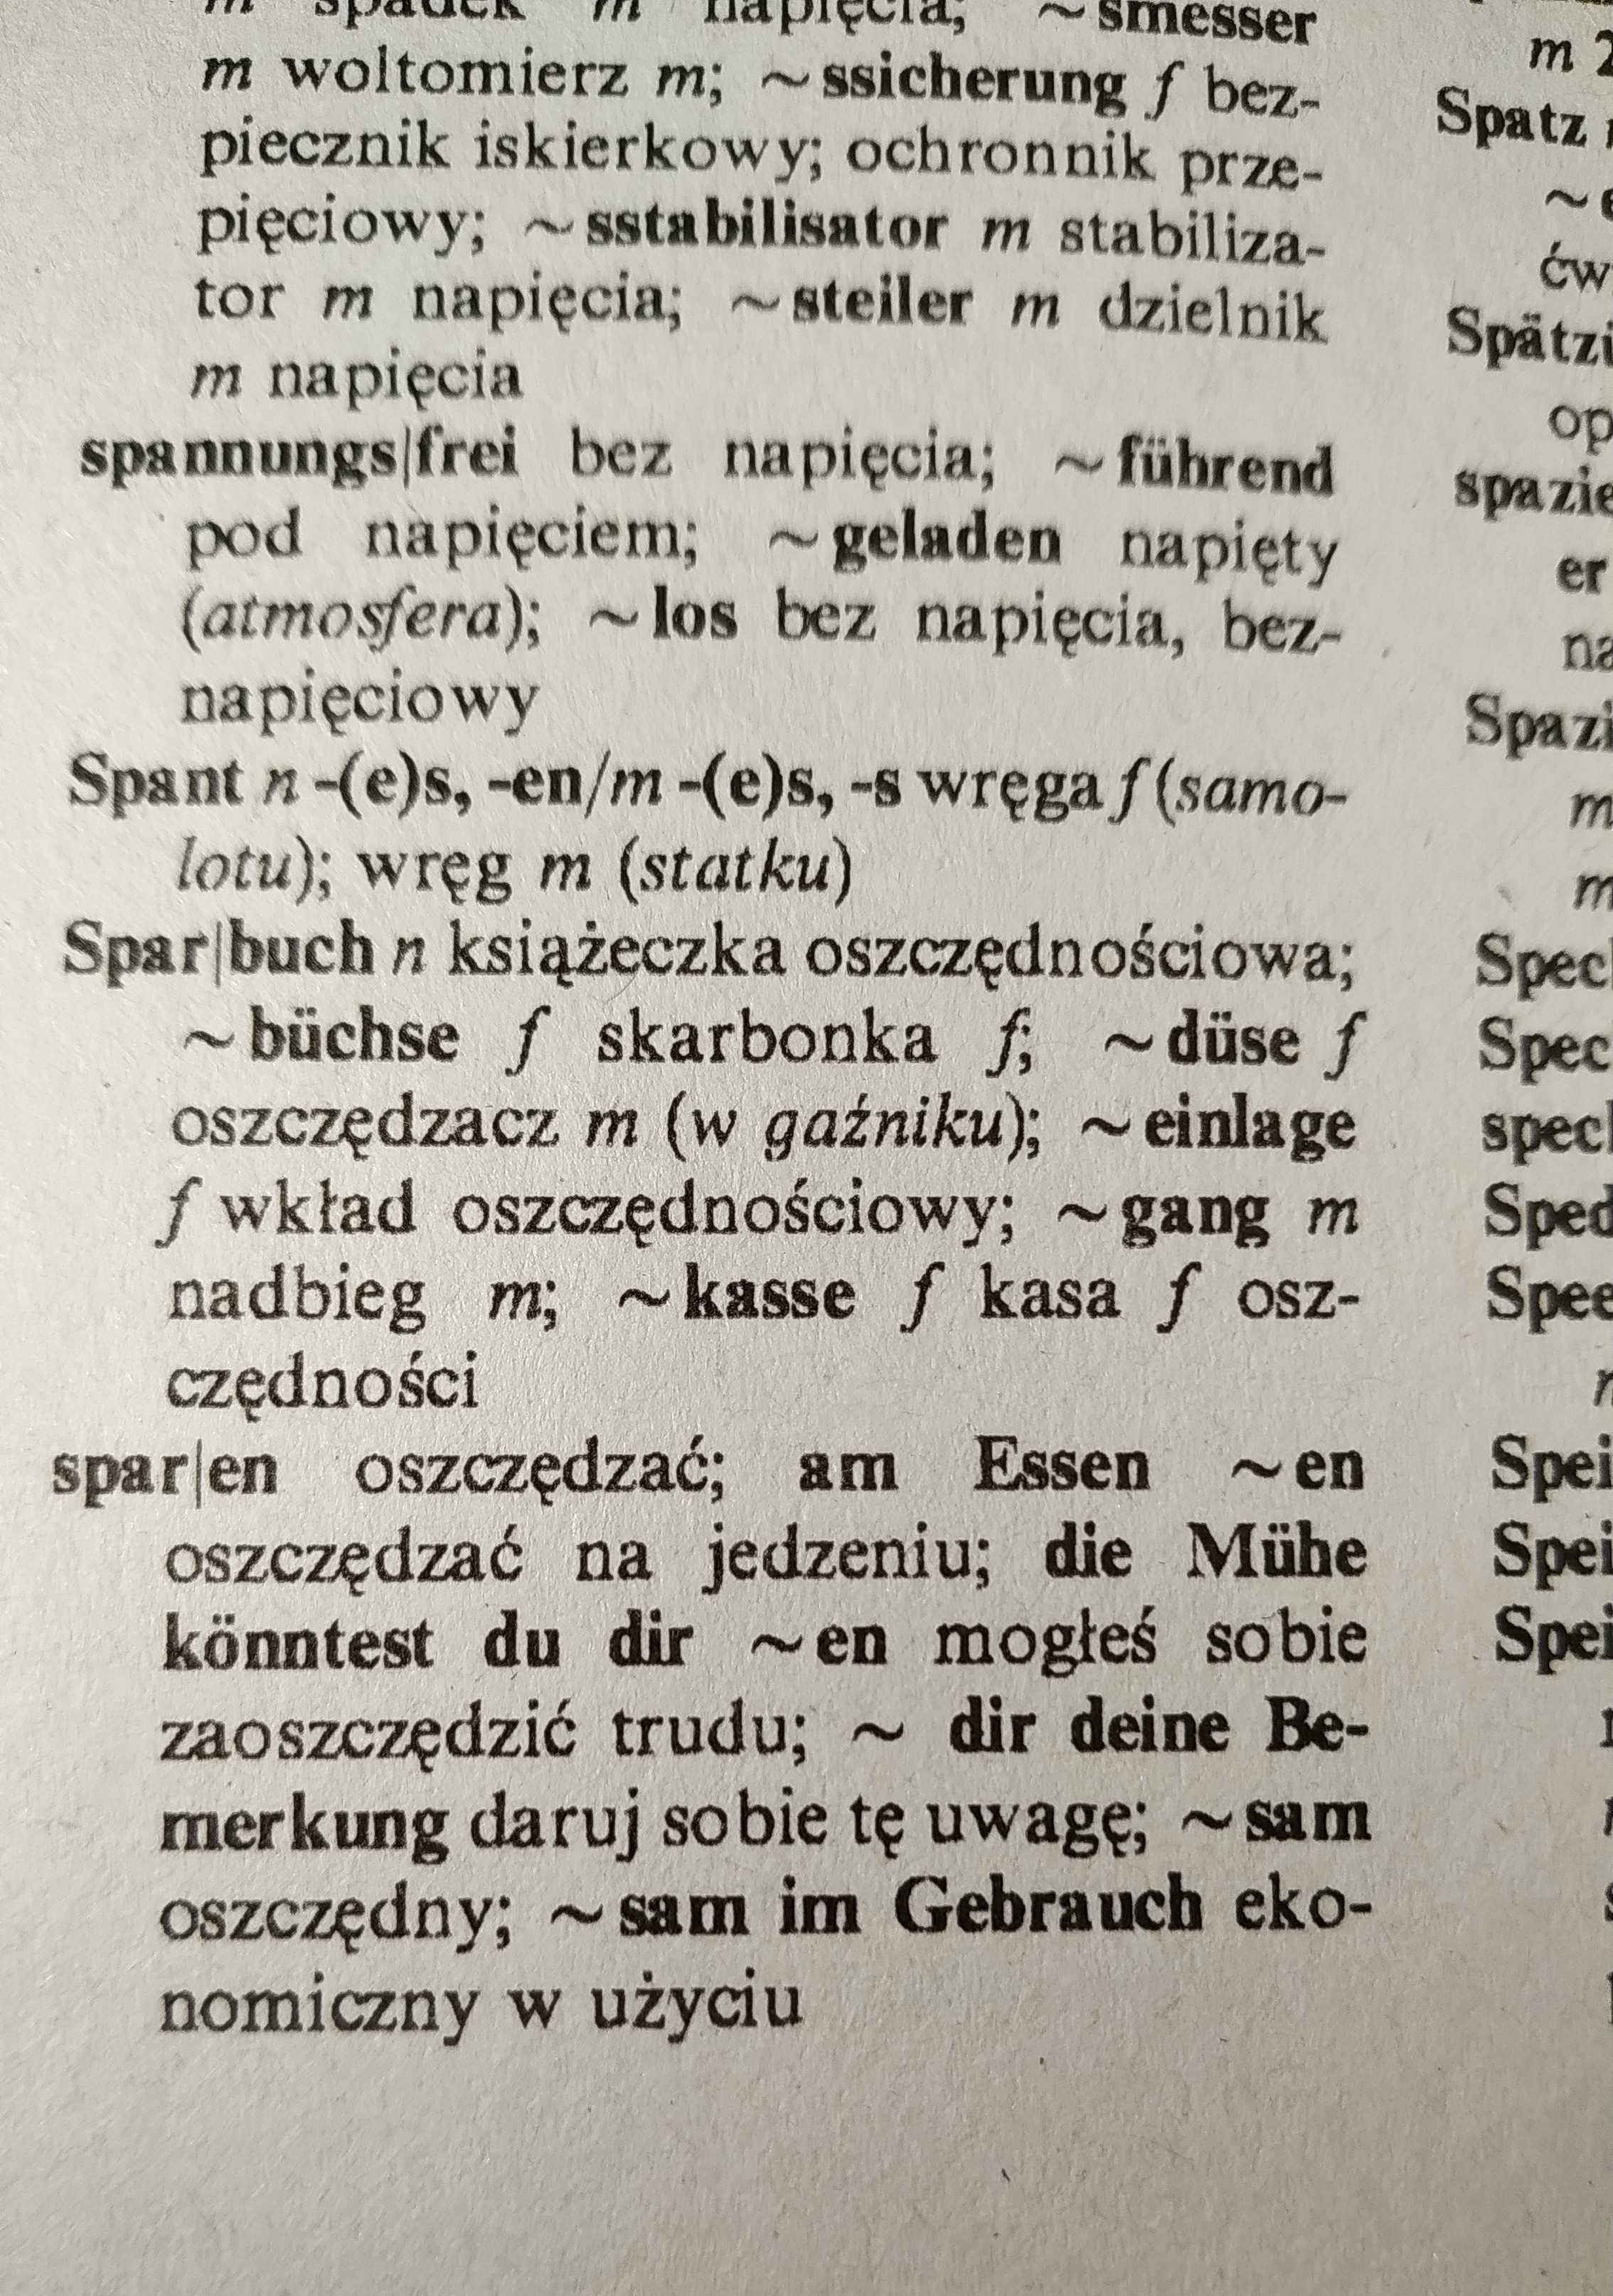 Słownik niemiecko polski Polsko niemiecki WWI